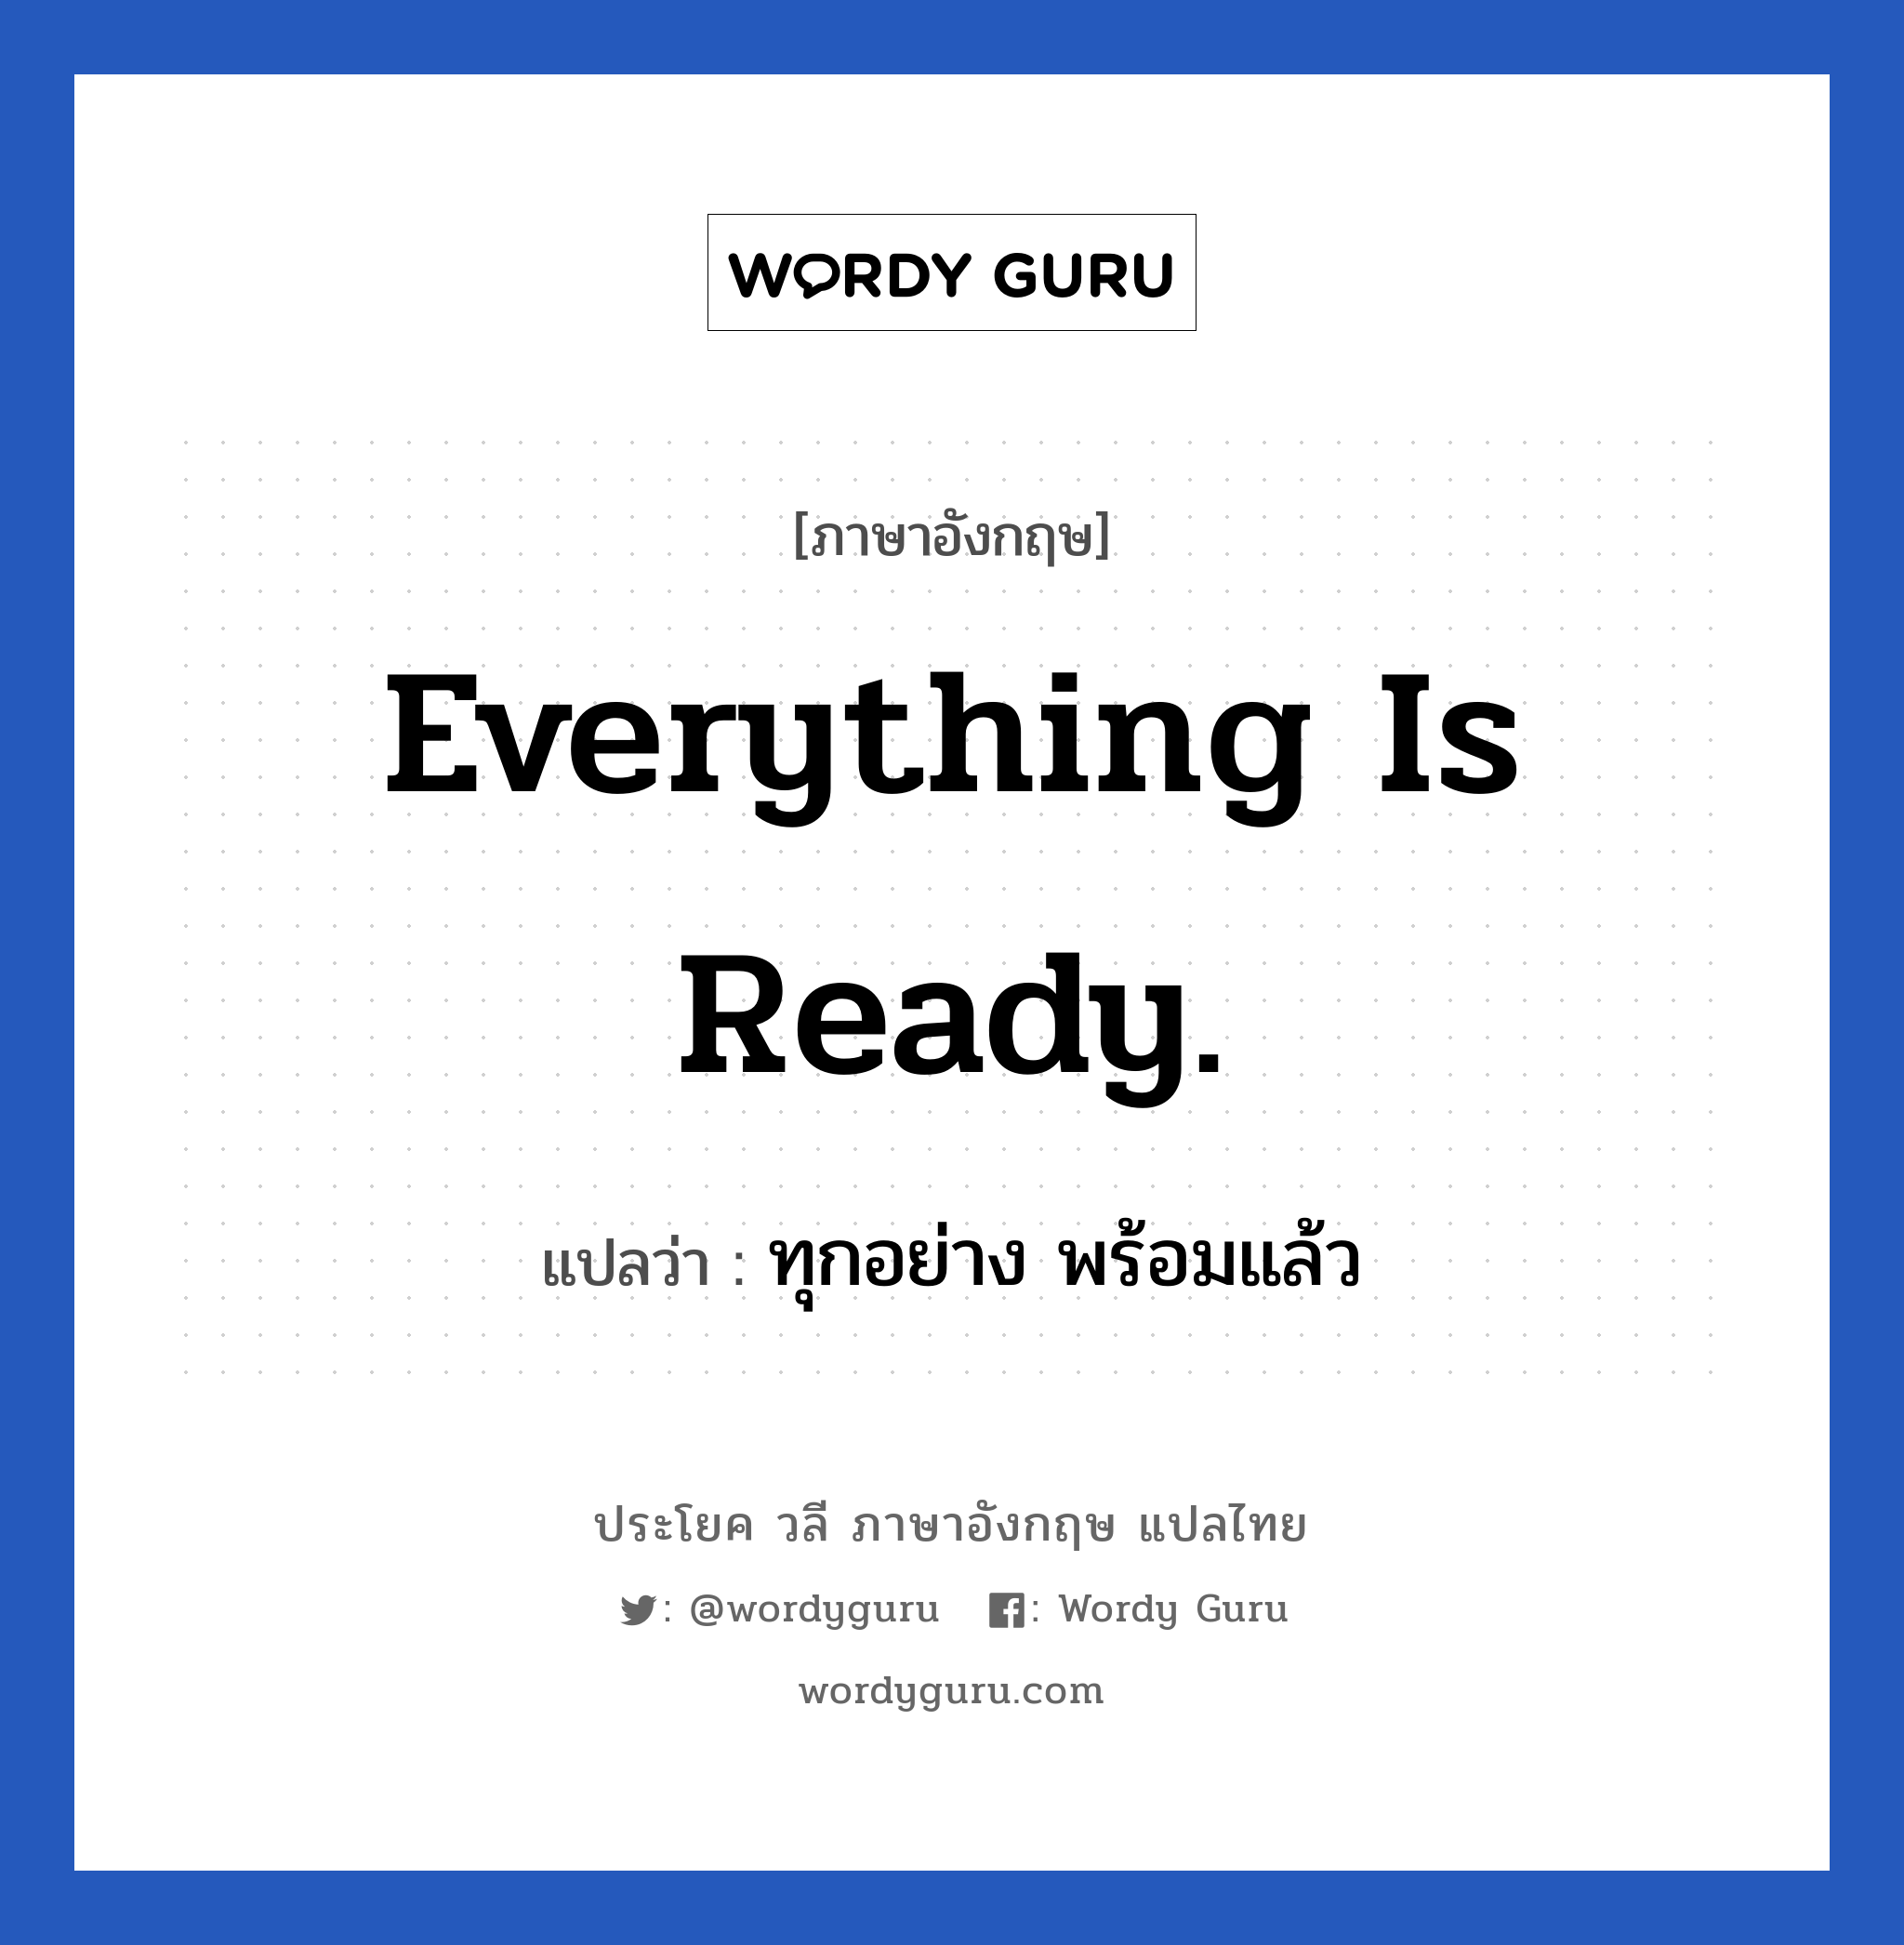 ทุกอย่าง พร้อมแล้ว ภาษาอังกฤษ?, วลีภาษาอังกฤษ ทุกอย่าง พร้อมแล้ว แปลว่า Everything is ready.